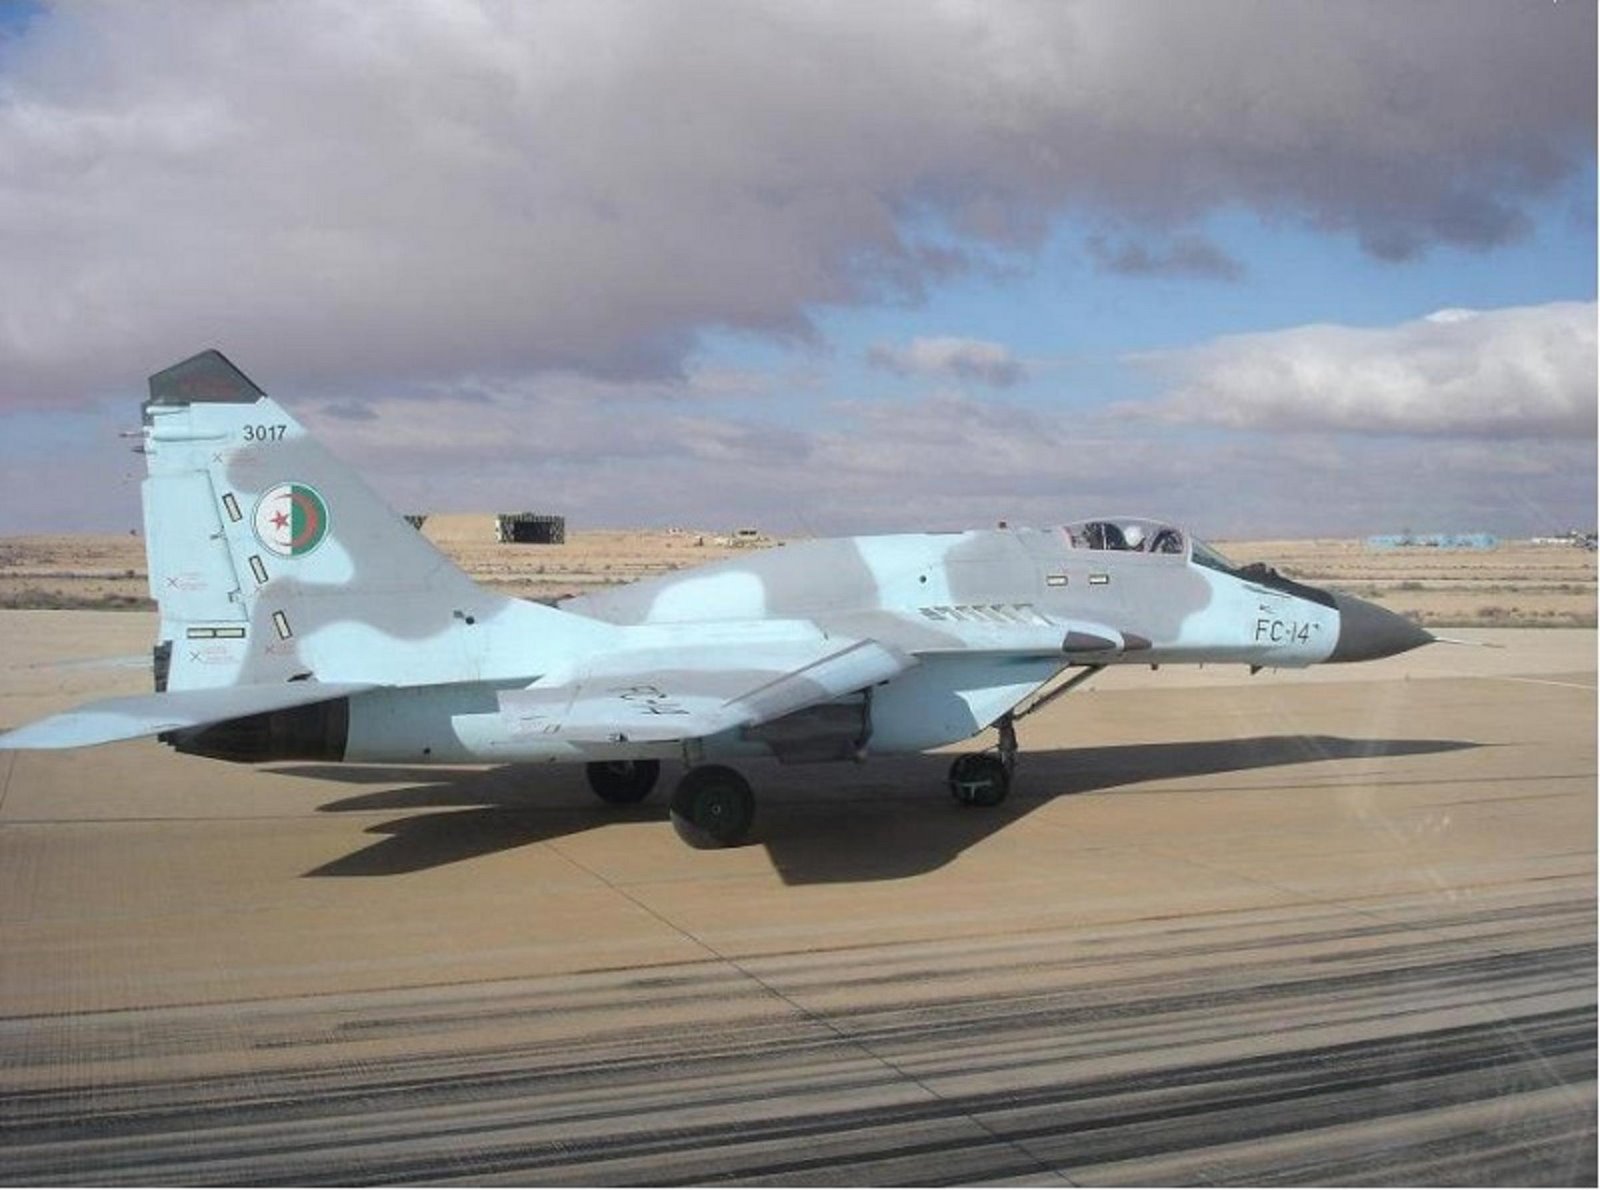 الميغ 29 والقوات الجوية الجزائرية  MIG-29SMT%2BFC-14%2B3017%2BARGELINO%2B1